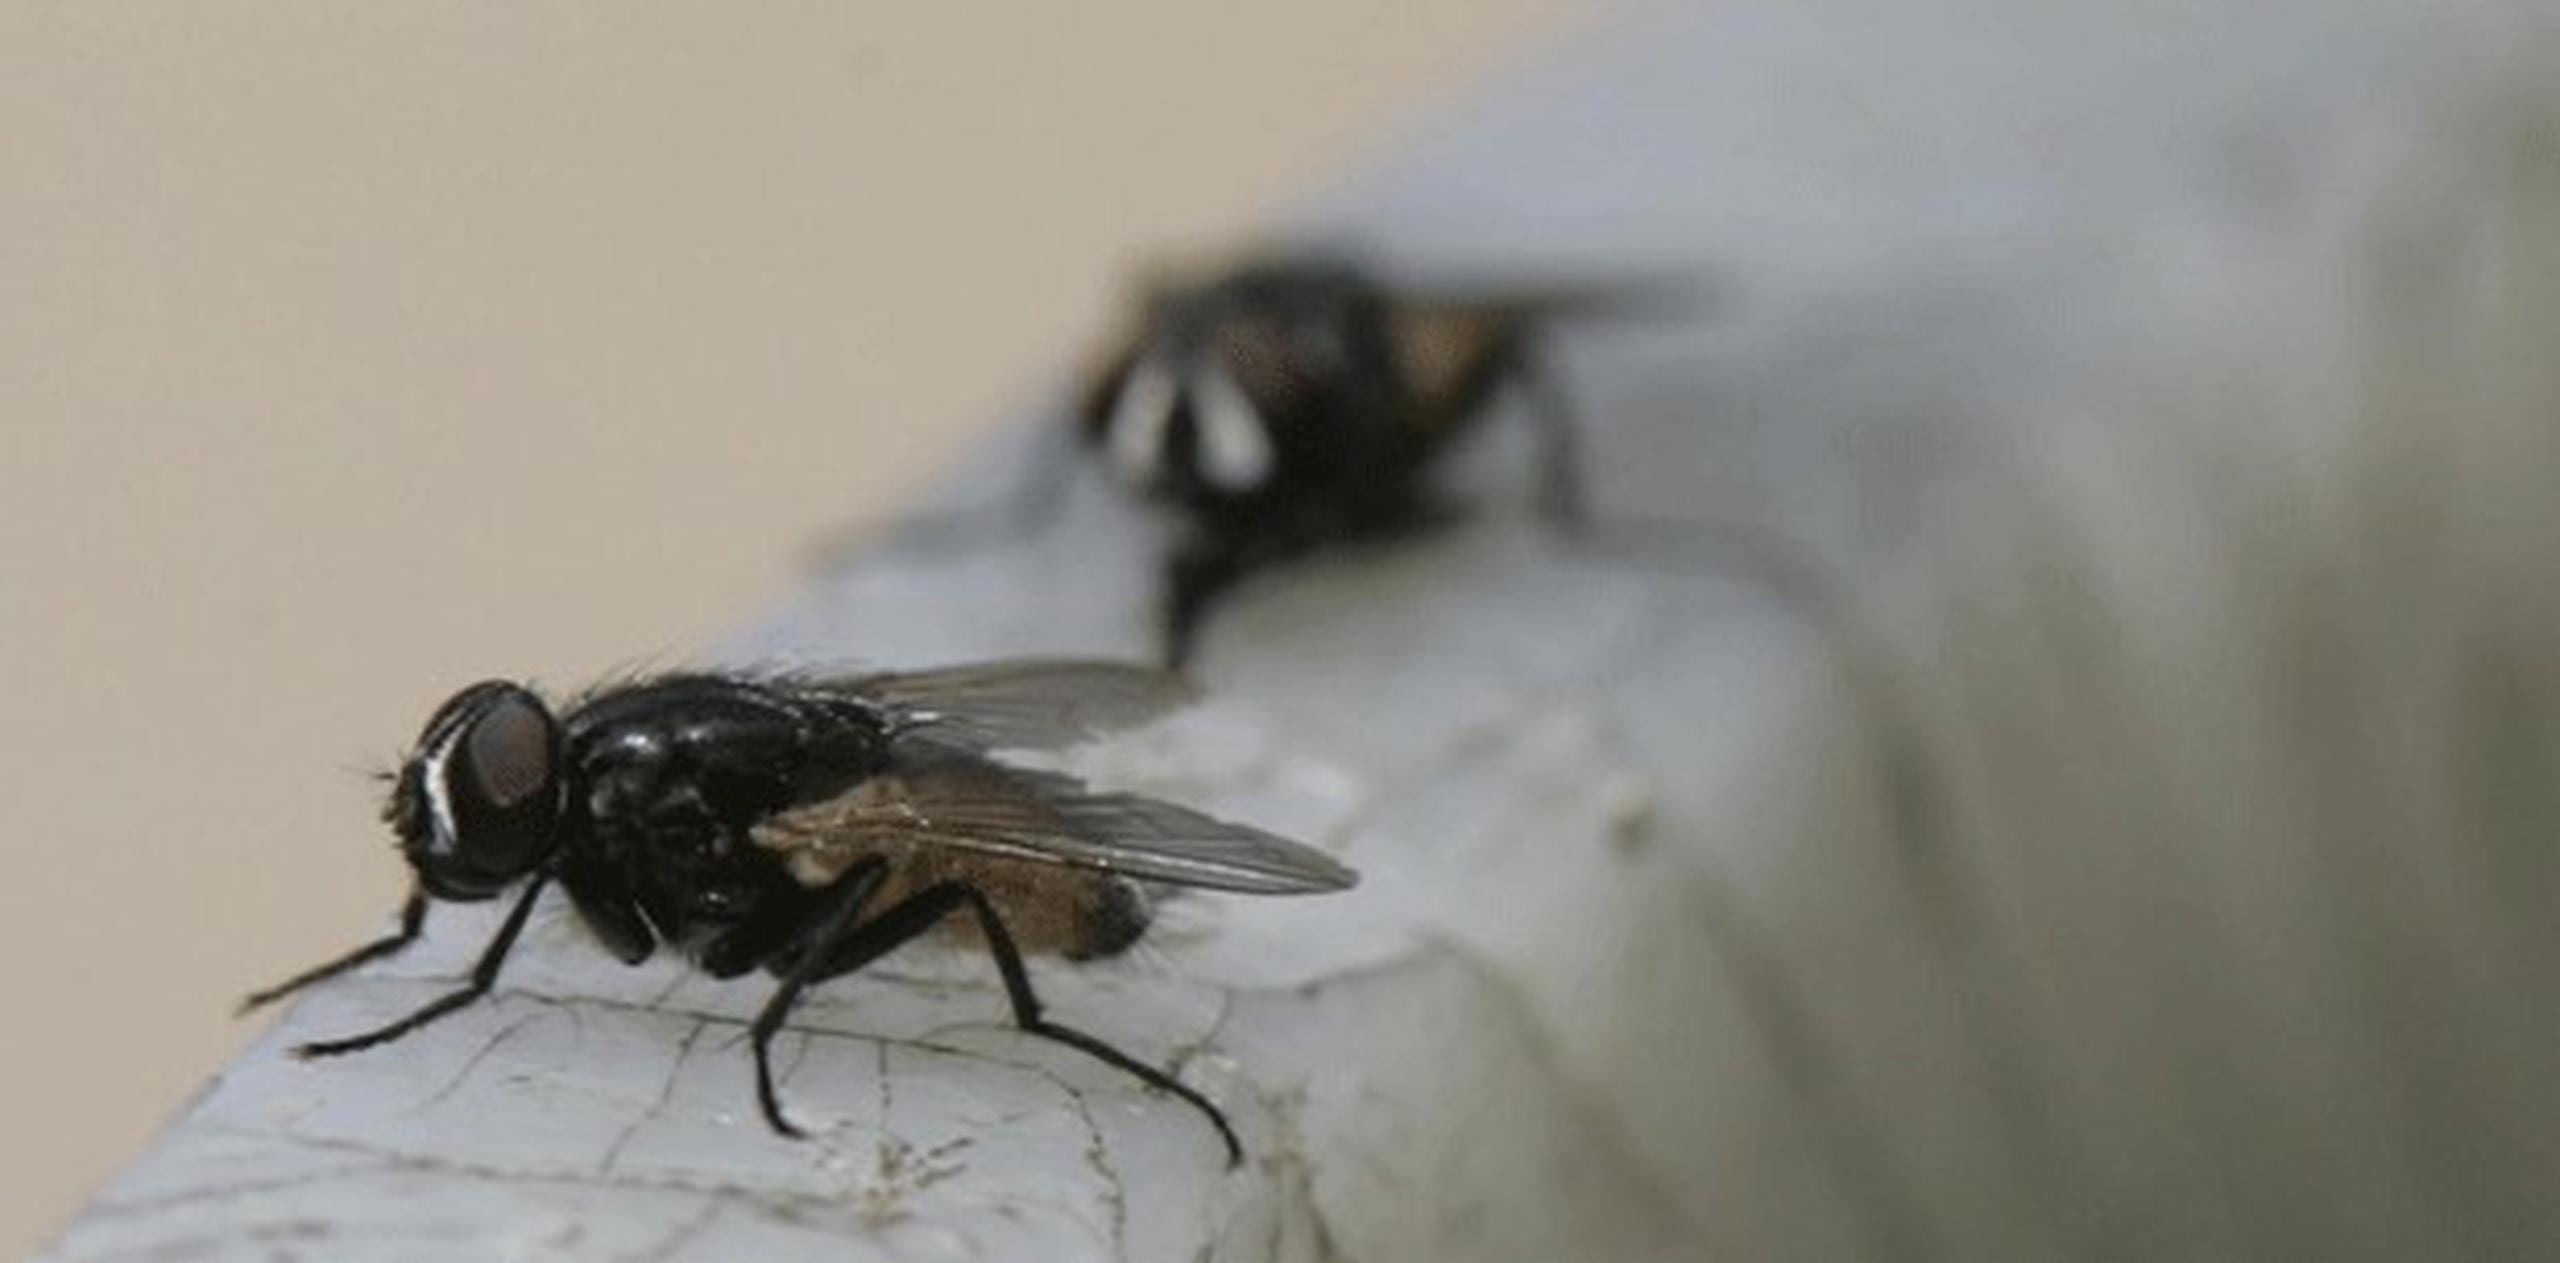 La investigación identifica múltiples genes y regiones cerebrales en las moscas "Drosophila", conocida como la mosca de la fruta, que estarían relacionados con el aprendizaje y la retención de la información metabólica, lo que ayudaría a estos insectos a decidir qué alimentos tomar. (Archivo)